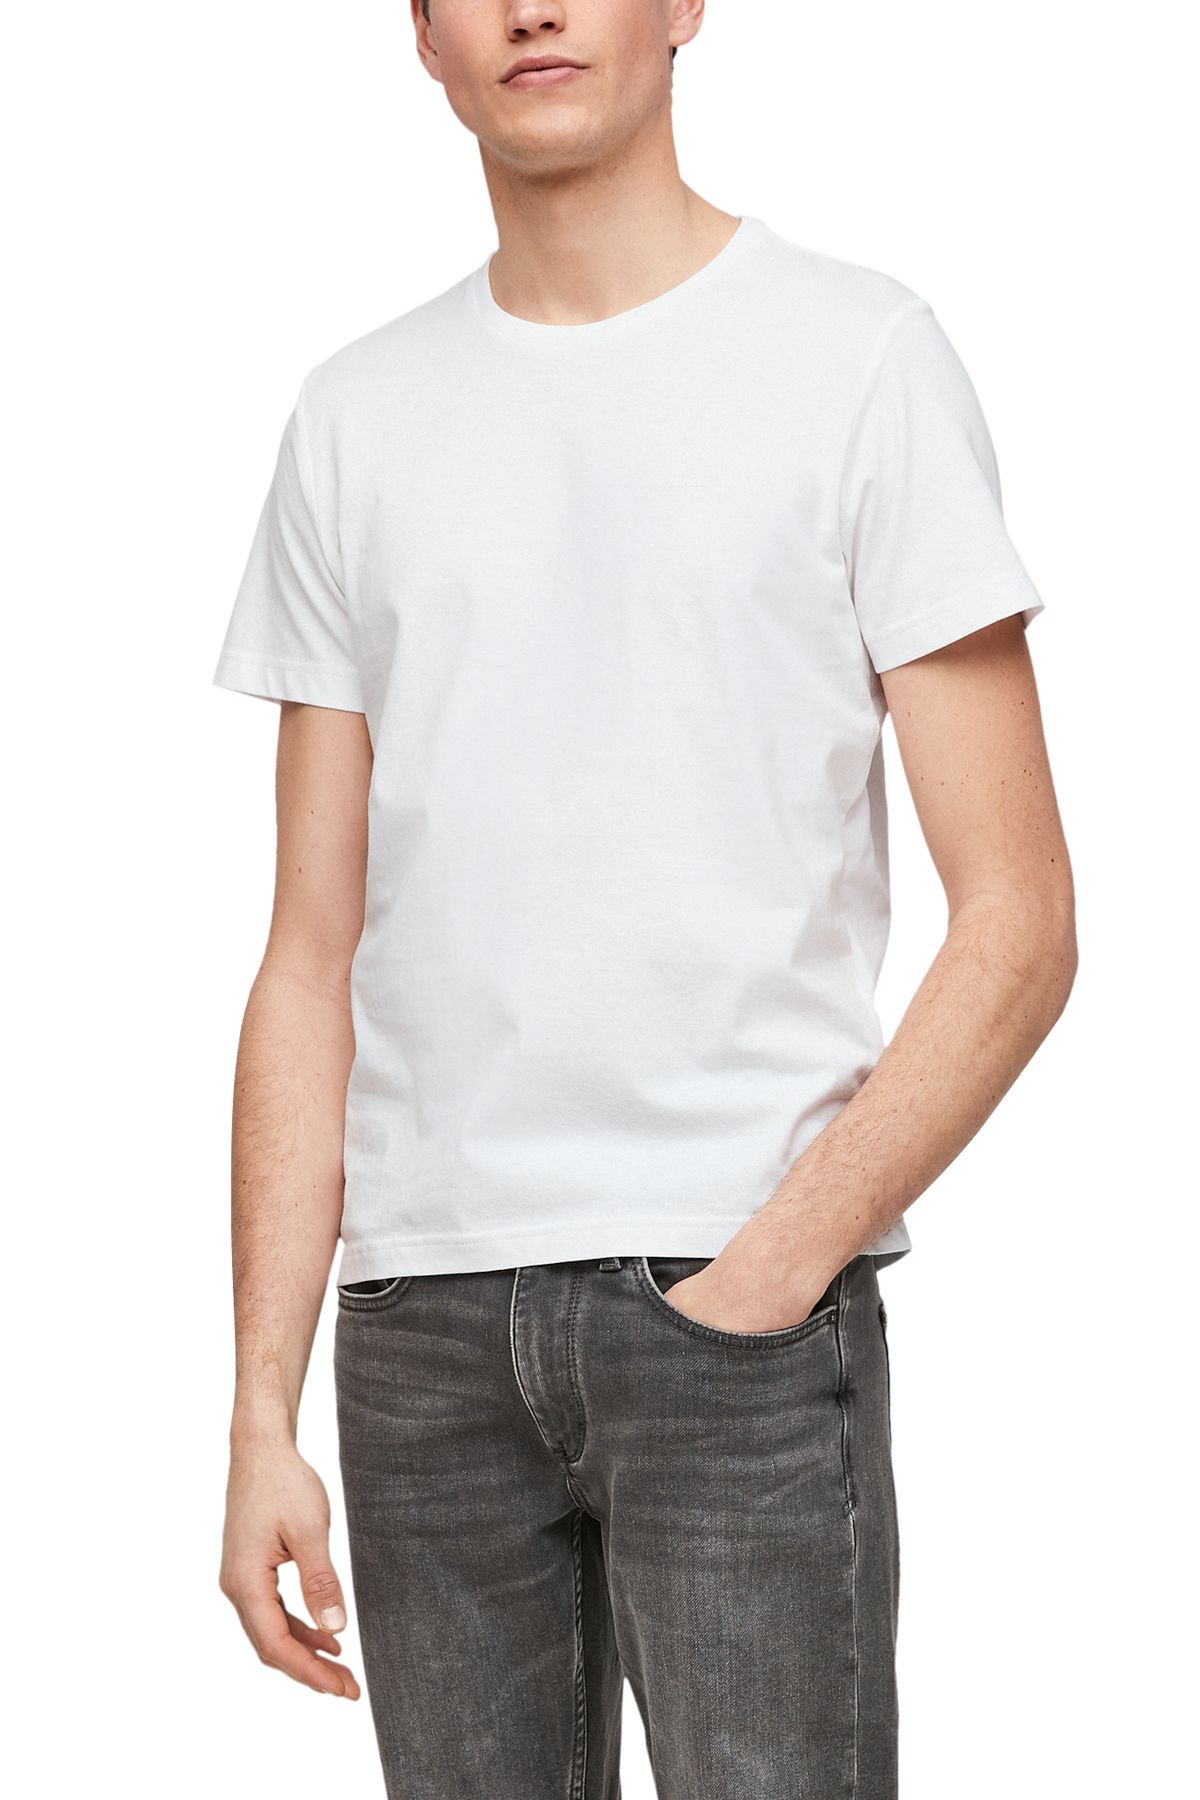 s.Oliver T-Shirt - White - Regular fit - Trendyol